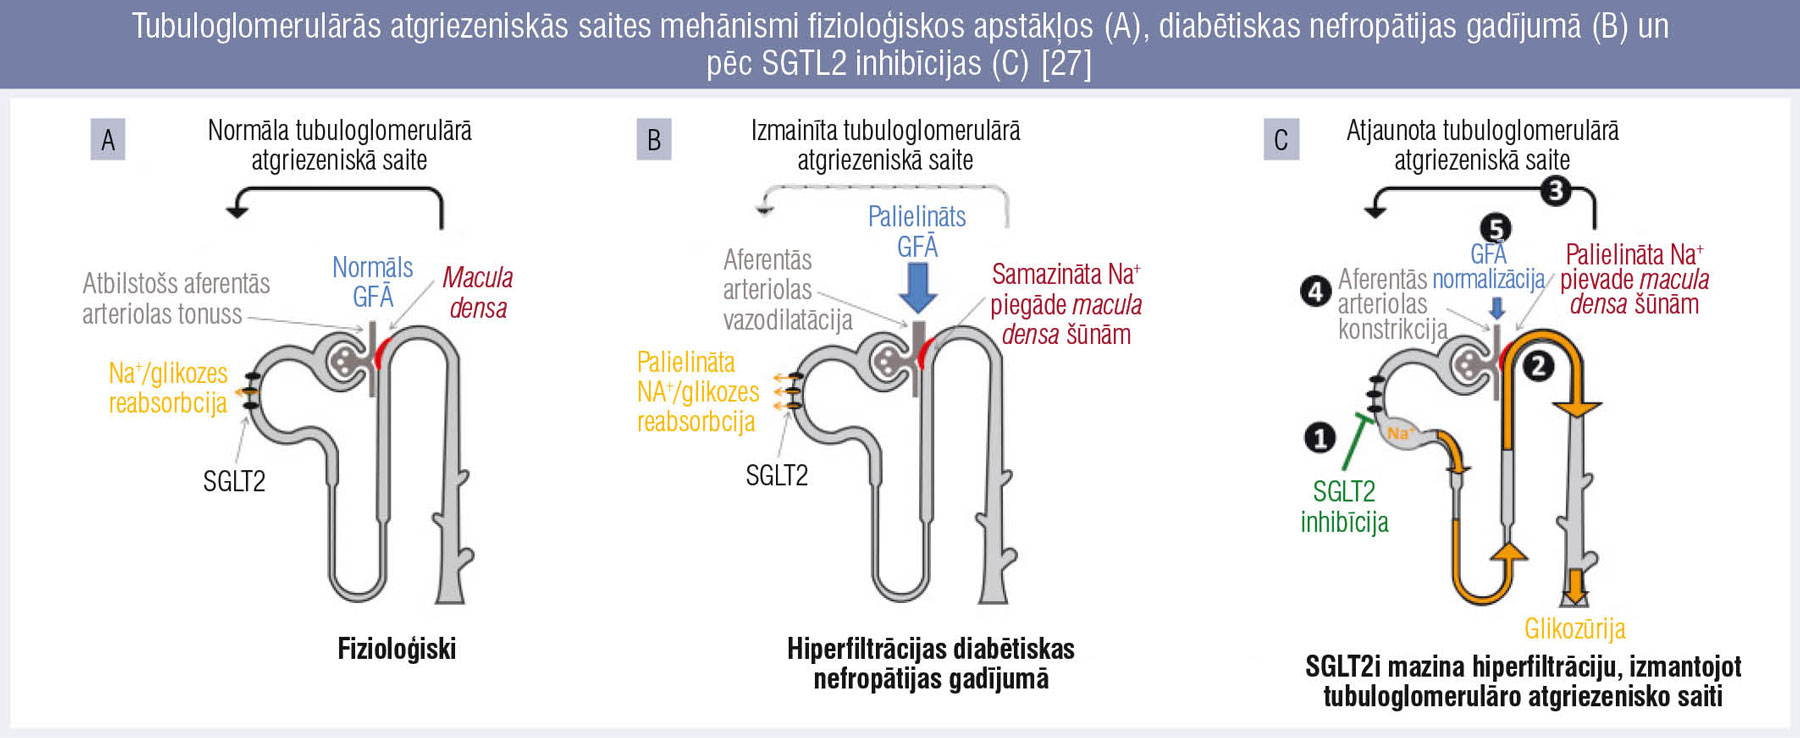 Tubuloglomerulārās atgriezeniskās saites mehānismi fizioloģiskos apstākļos (A), diabētiskas nefropātijas gadījumā (B) un pēc SGTL2 inhibīcijas (C) [27]